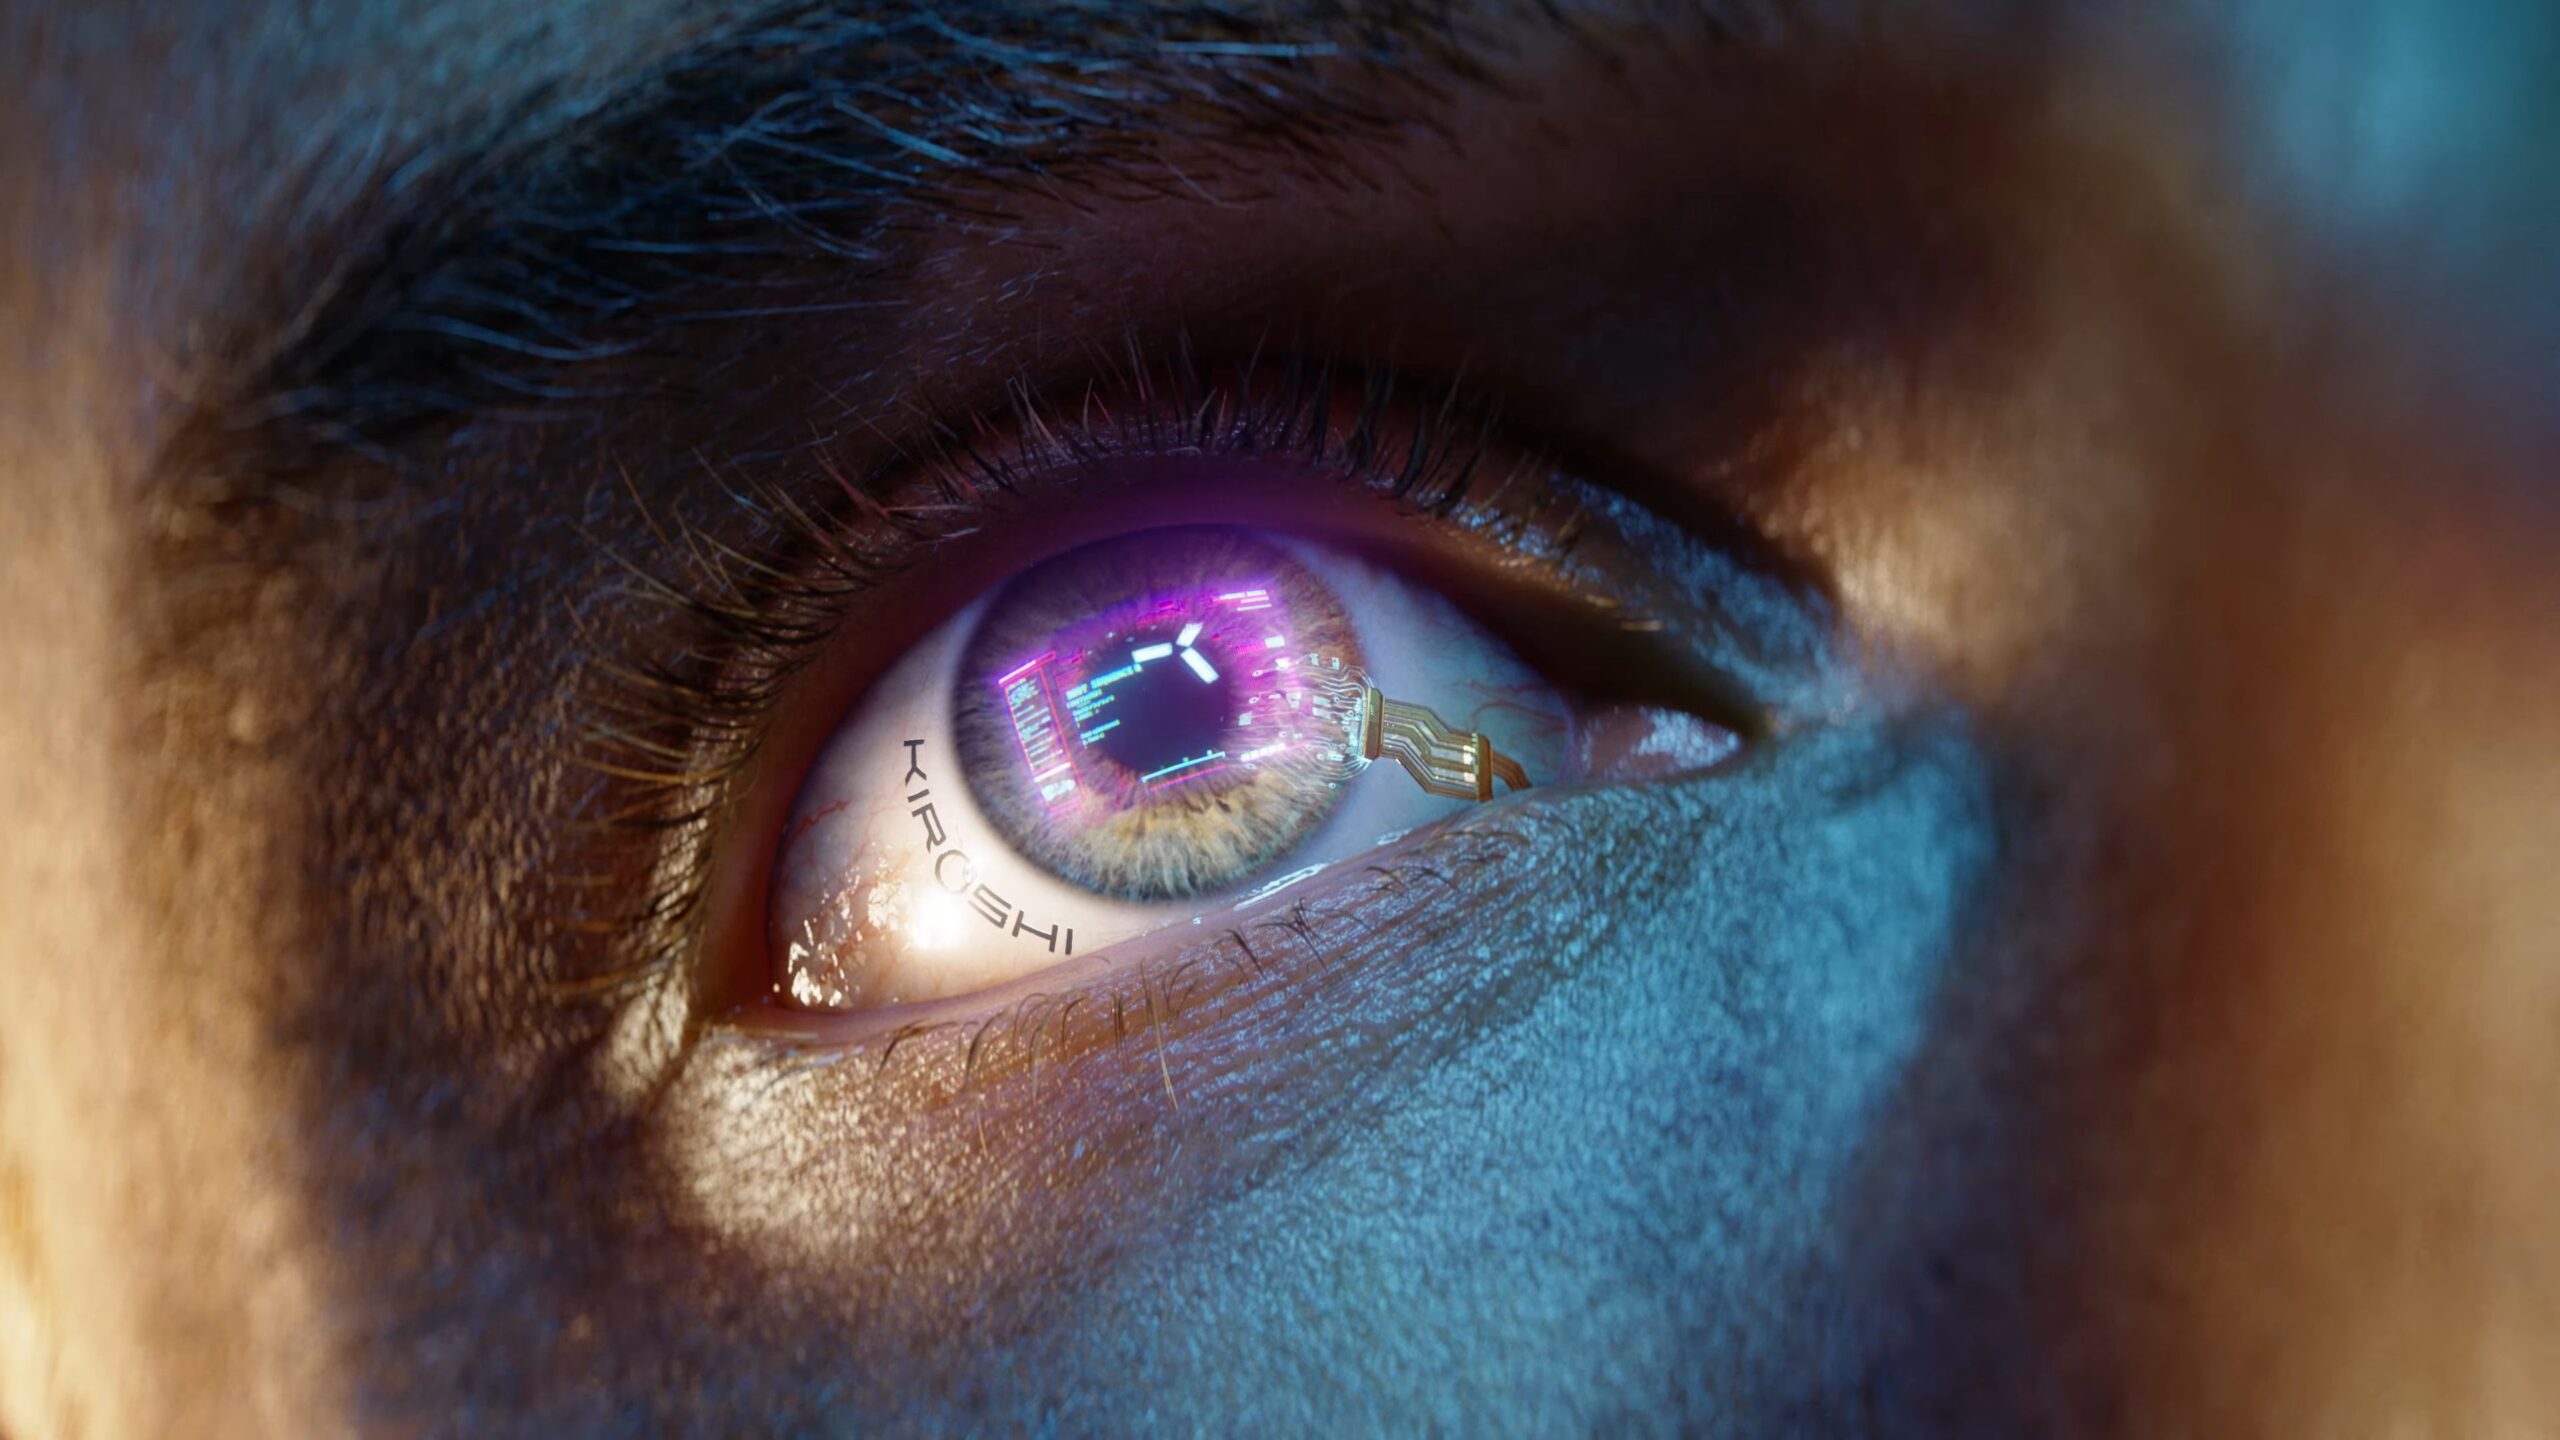 Cyberpunk 2077 — Seize The Day cyberware eye)